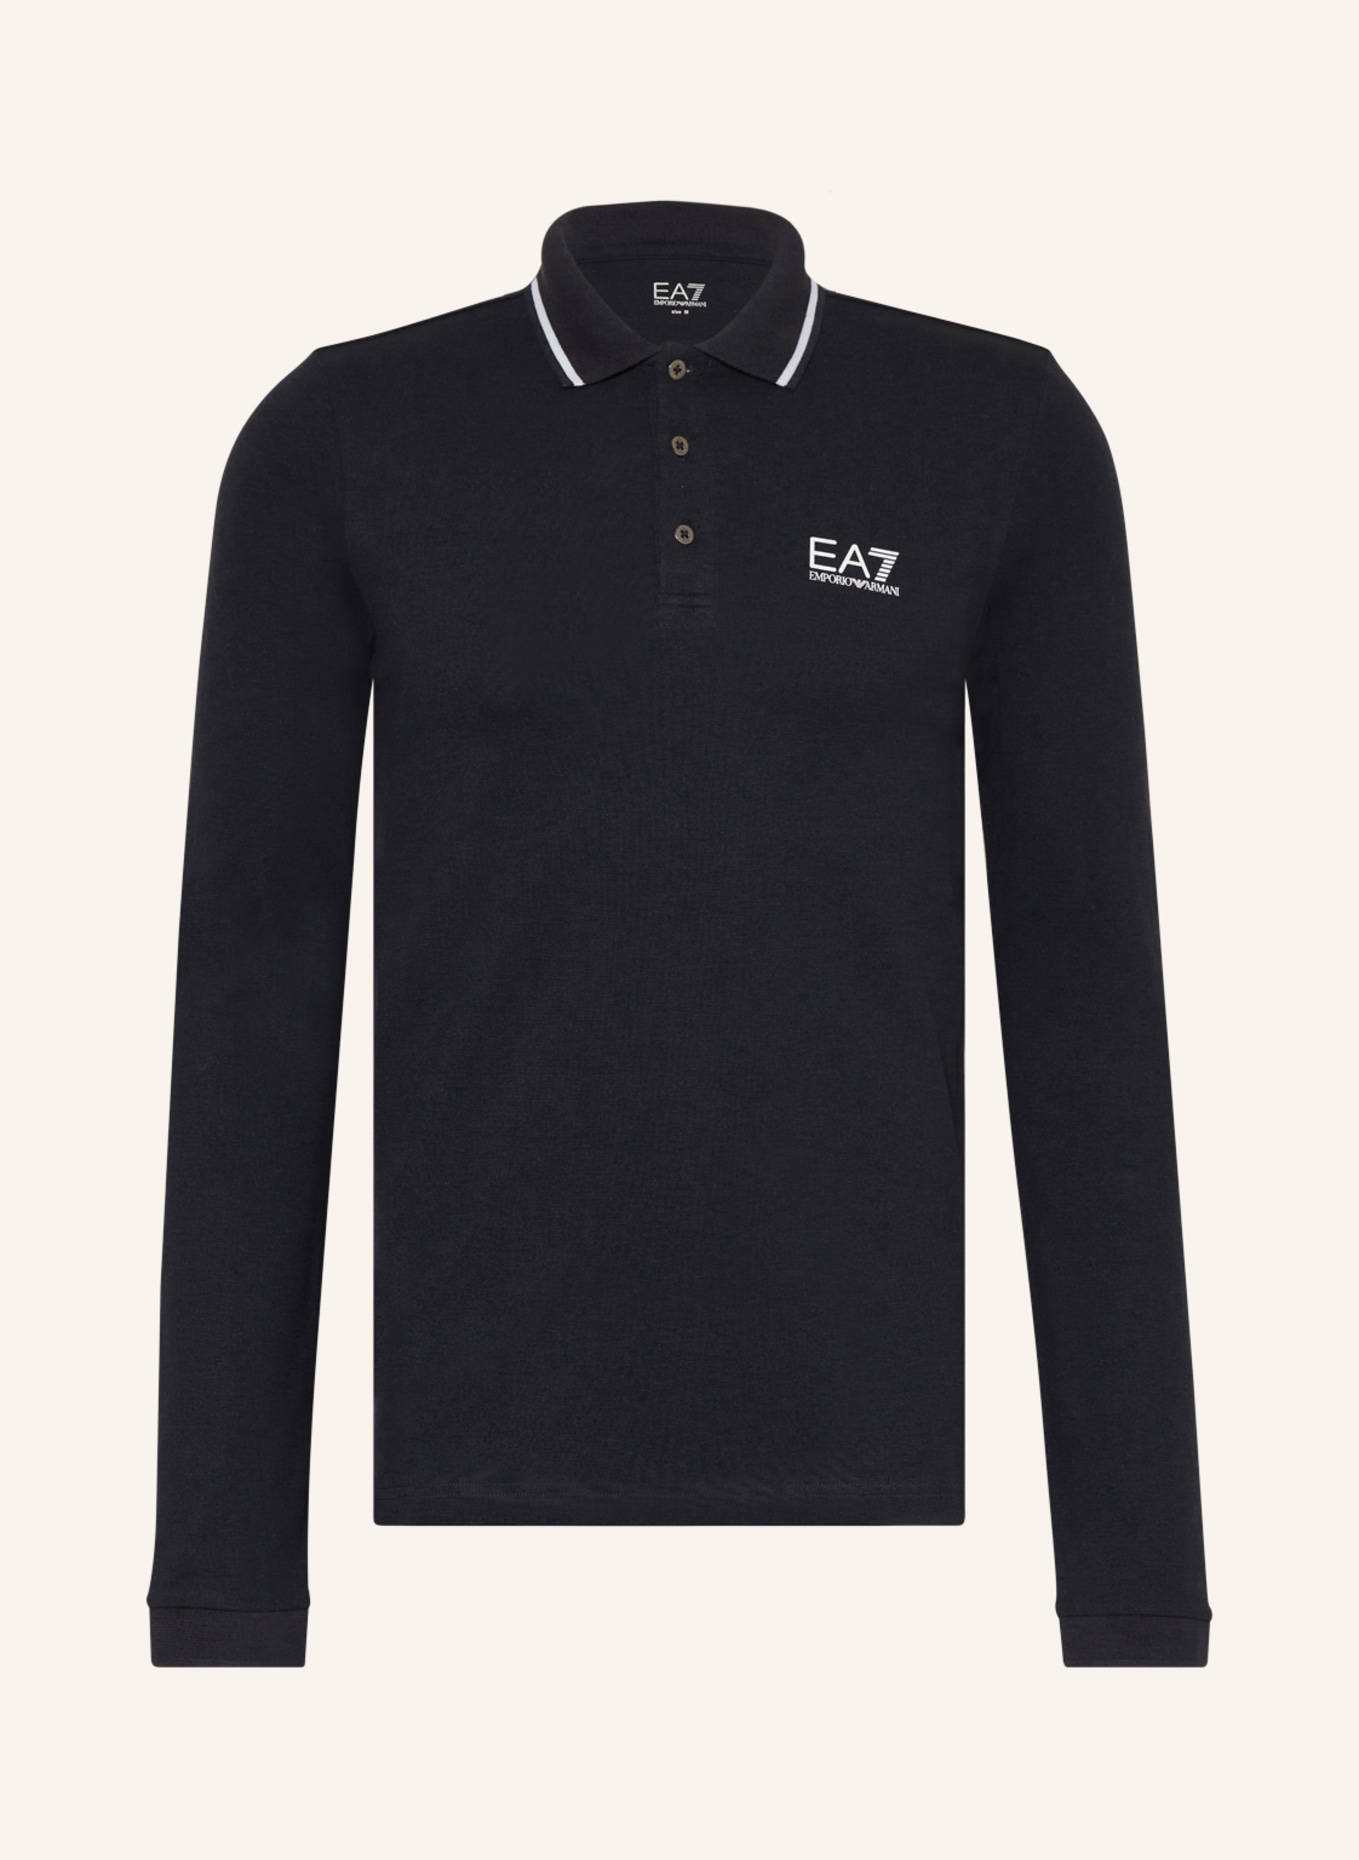 EA7 EMPORIO ARMANI Piqué polo shirt, Color: BLACK (Image 1)